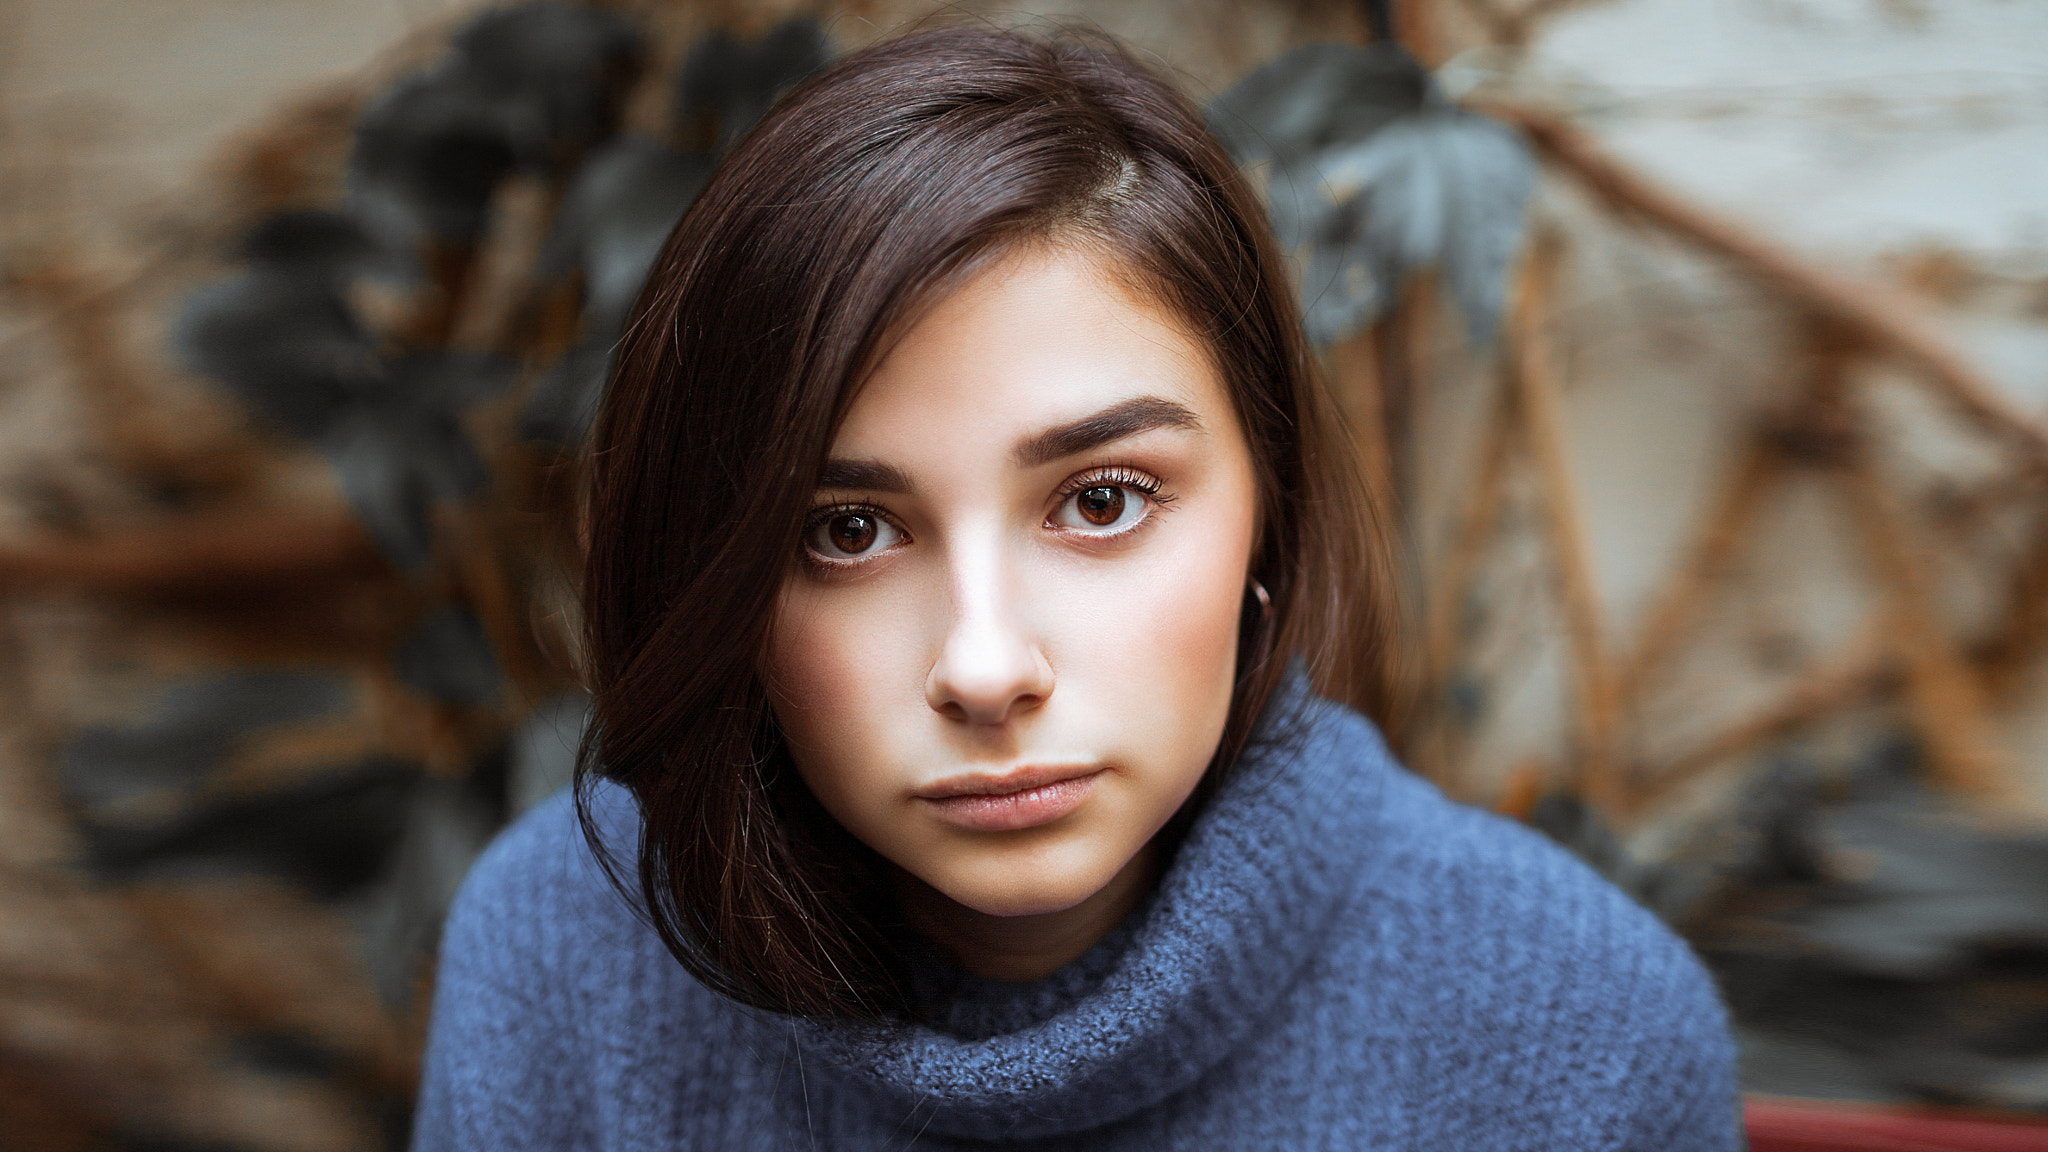 People 2048x1152 women turtlenecks face portrait depth of field sweater